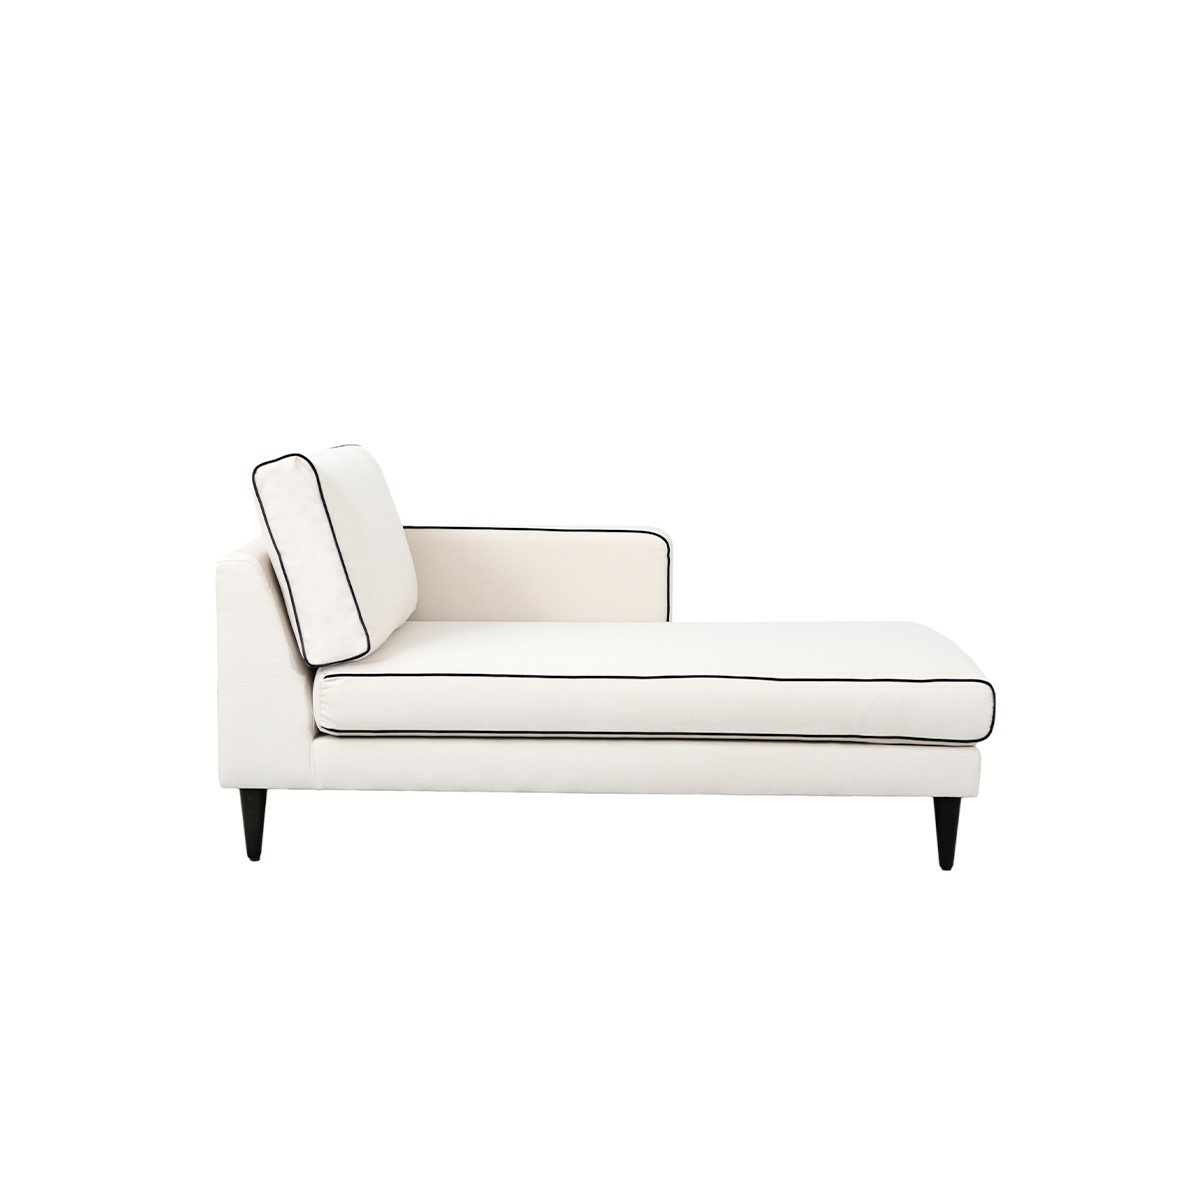 Noa sofa - Right armrest, L180 x P90 x H80 cm - Cotton - image 4